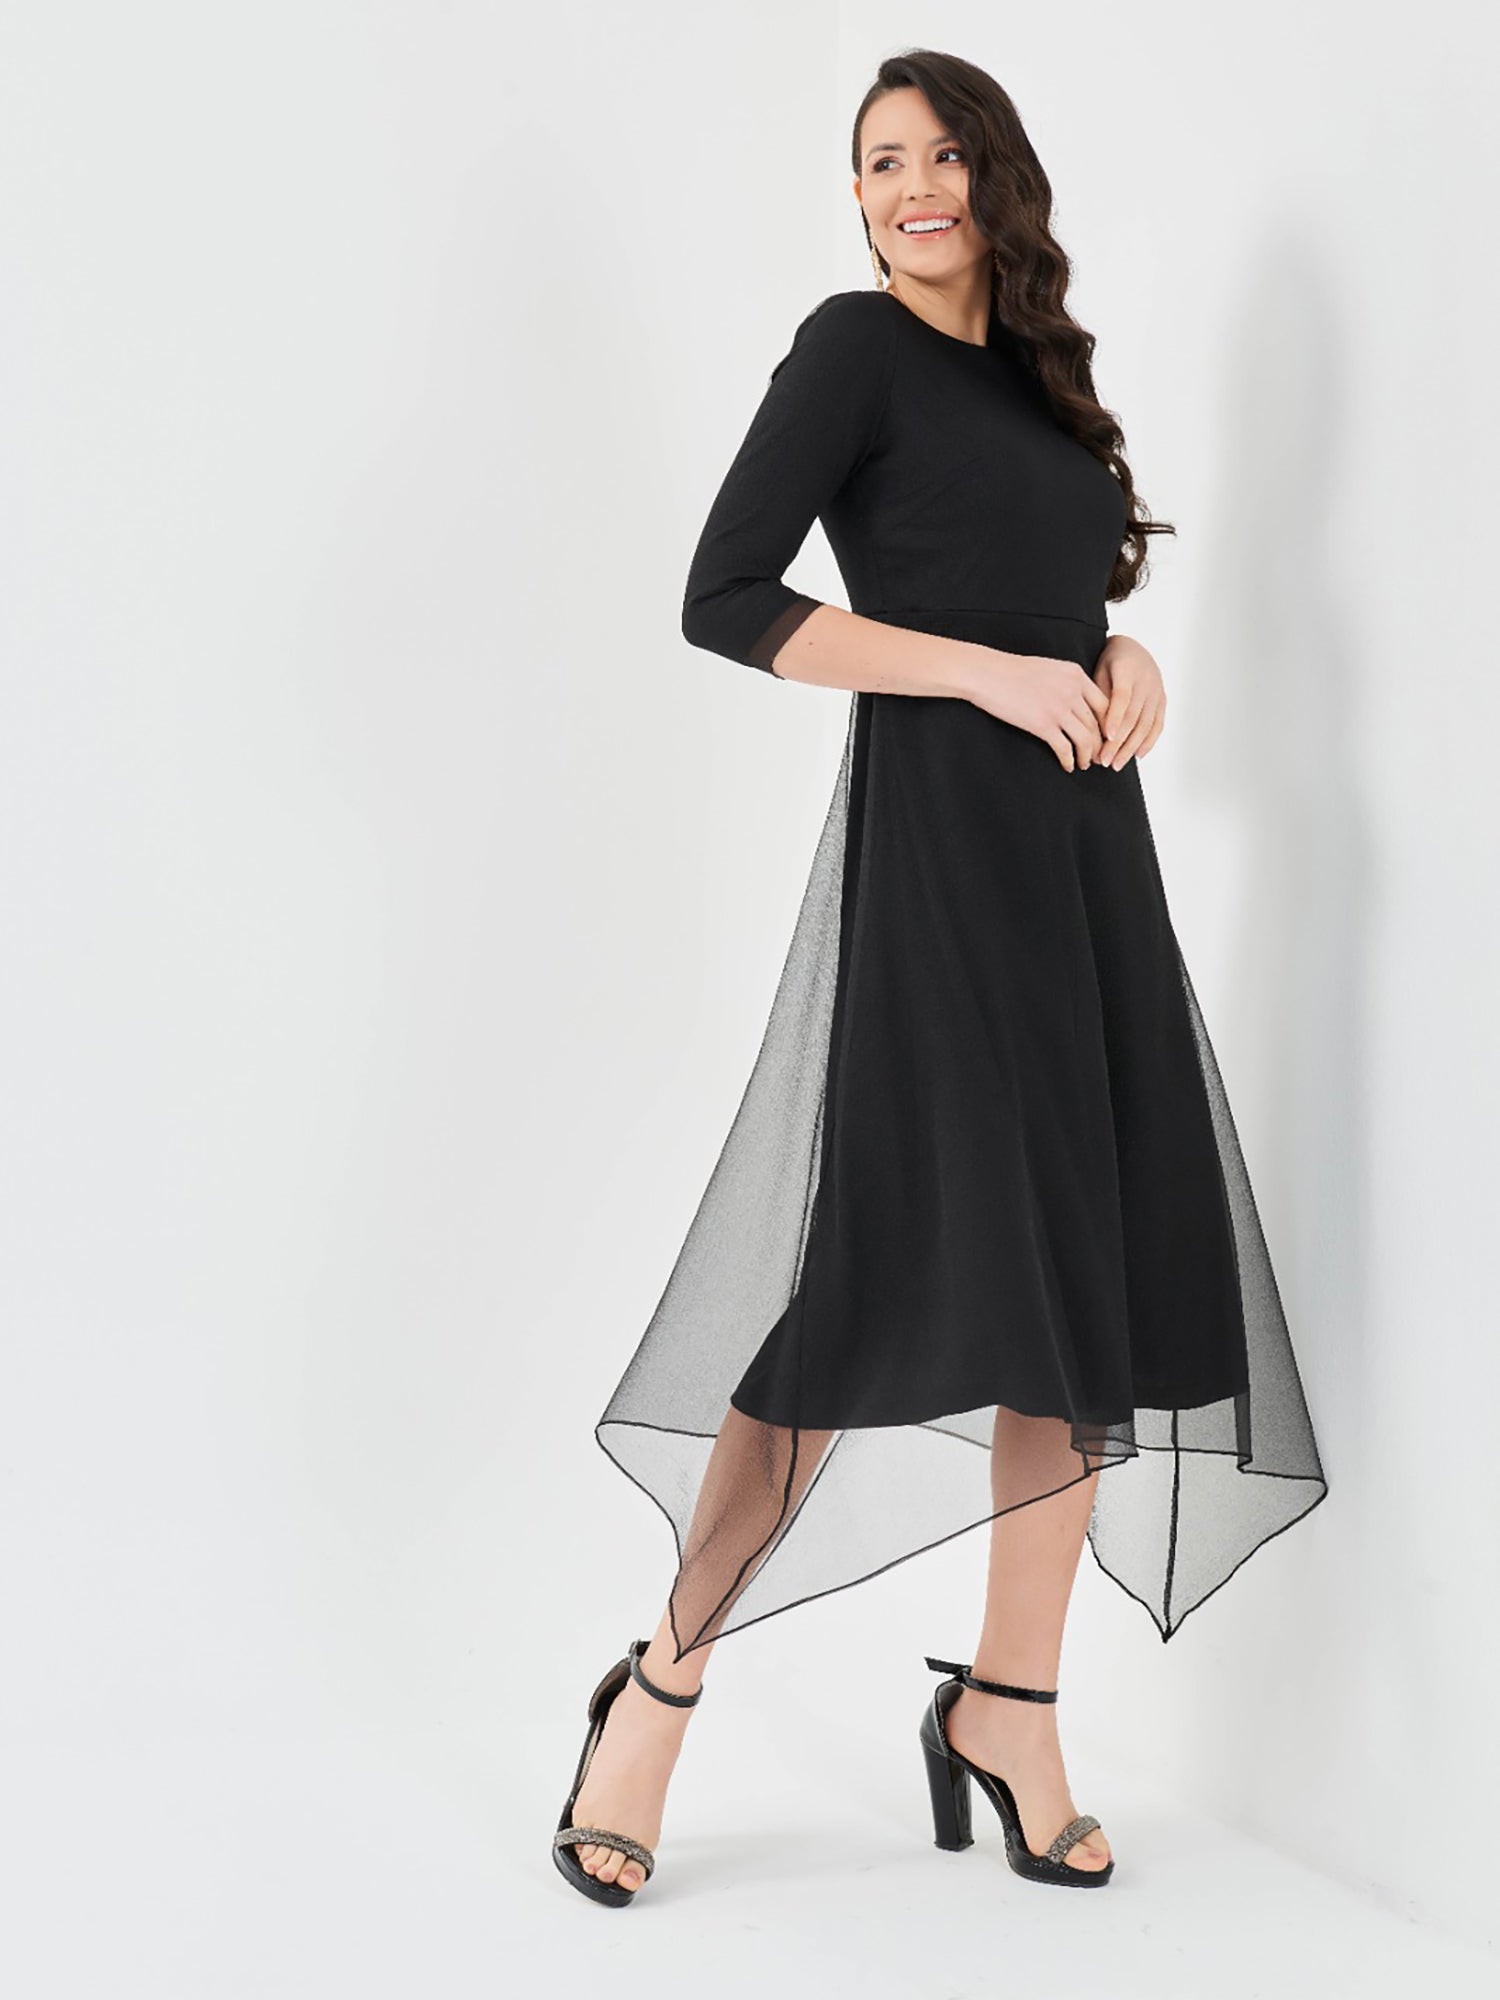 Perfetto A-line Dress - Dresses